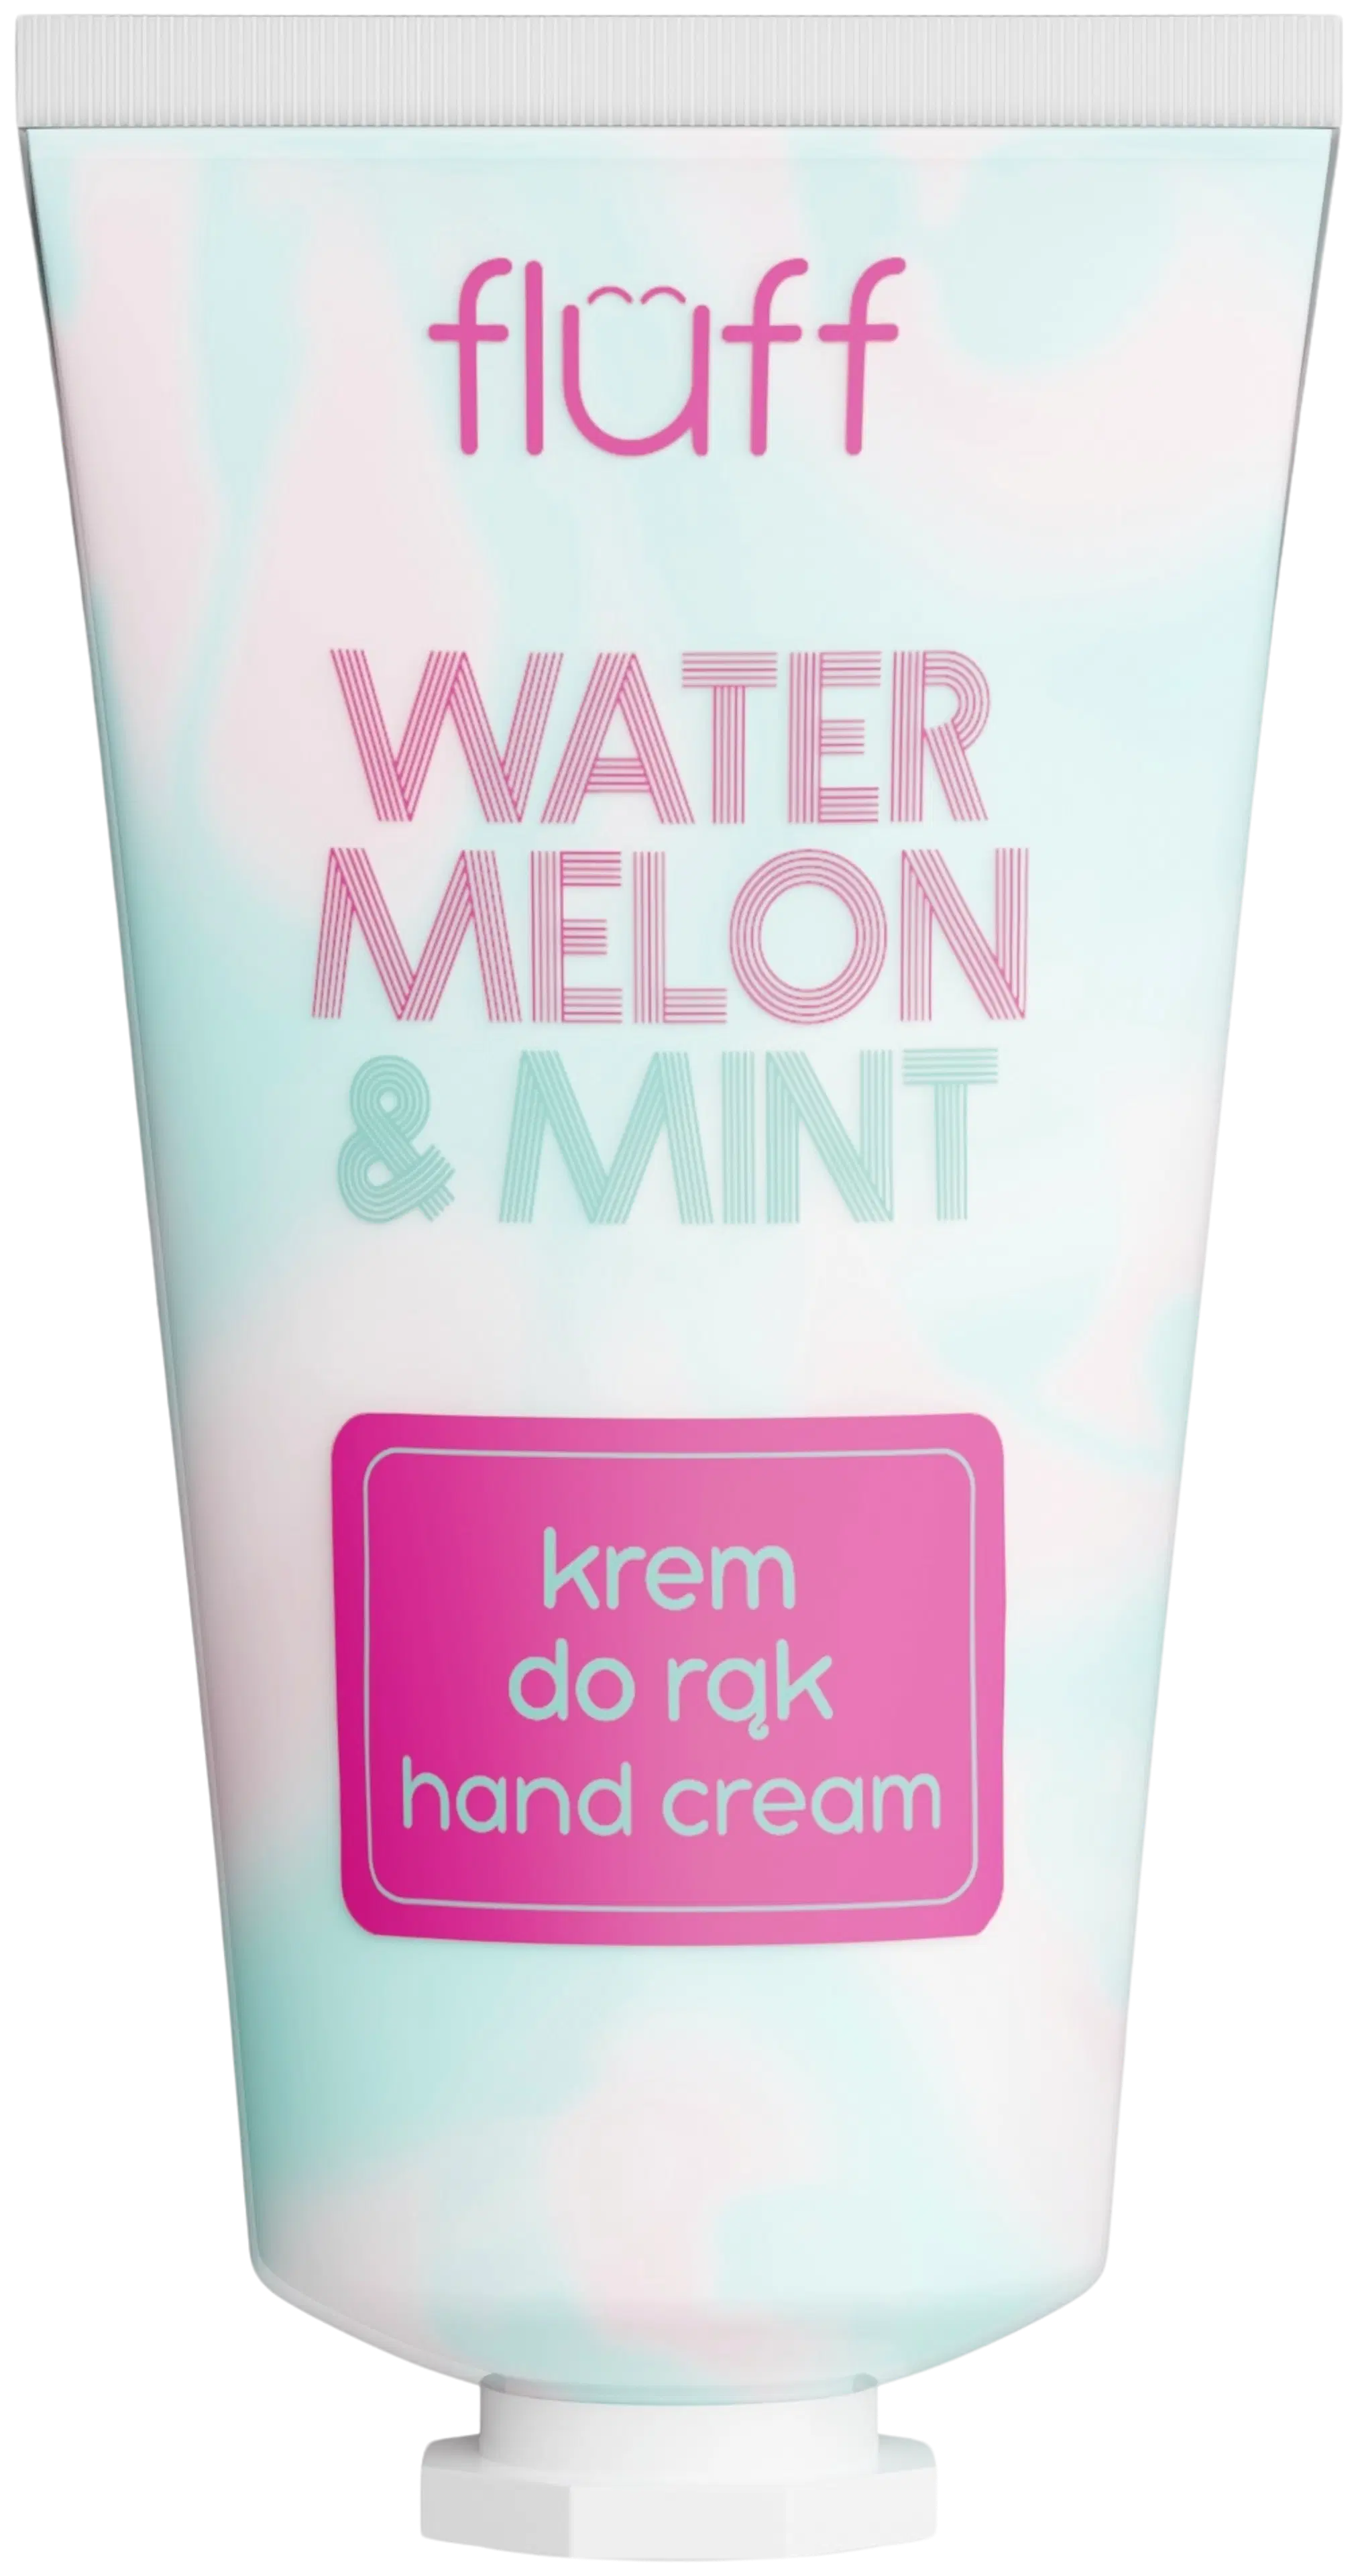 FLUFF Hand Cream watermelon & mint-käsivoide 50 ml